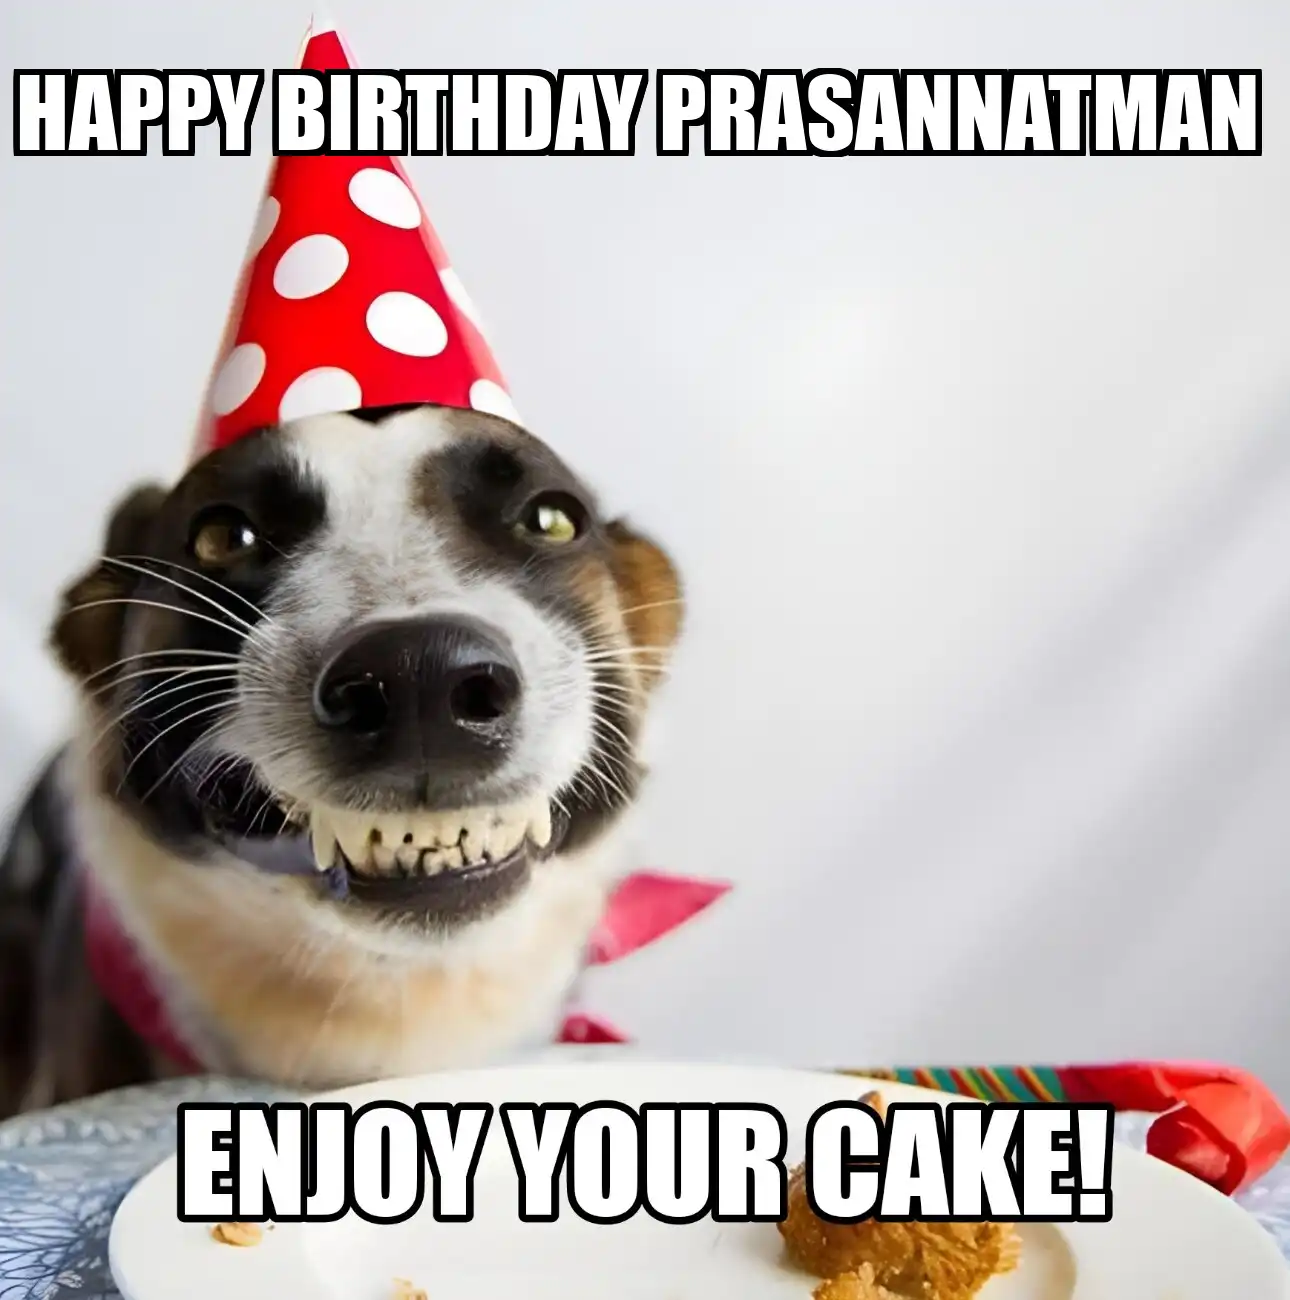 Happy Birthday Prasannatman Enjoy Your Cake Dog Meme